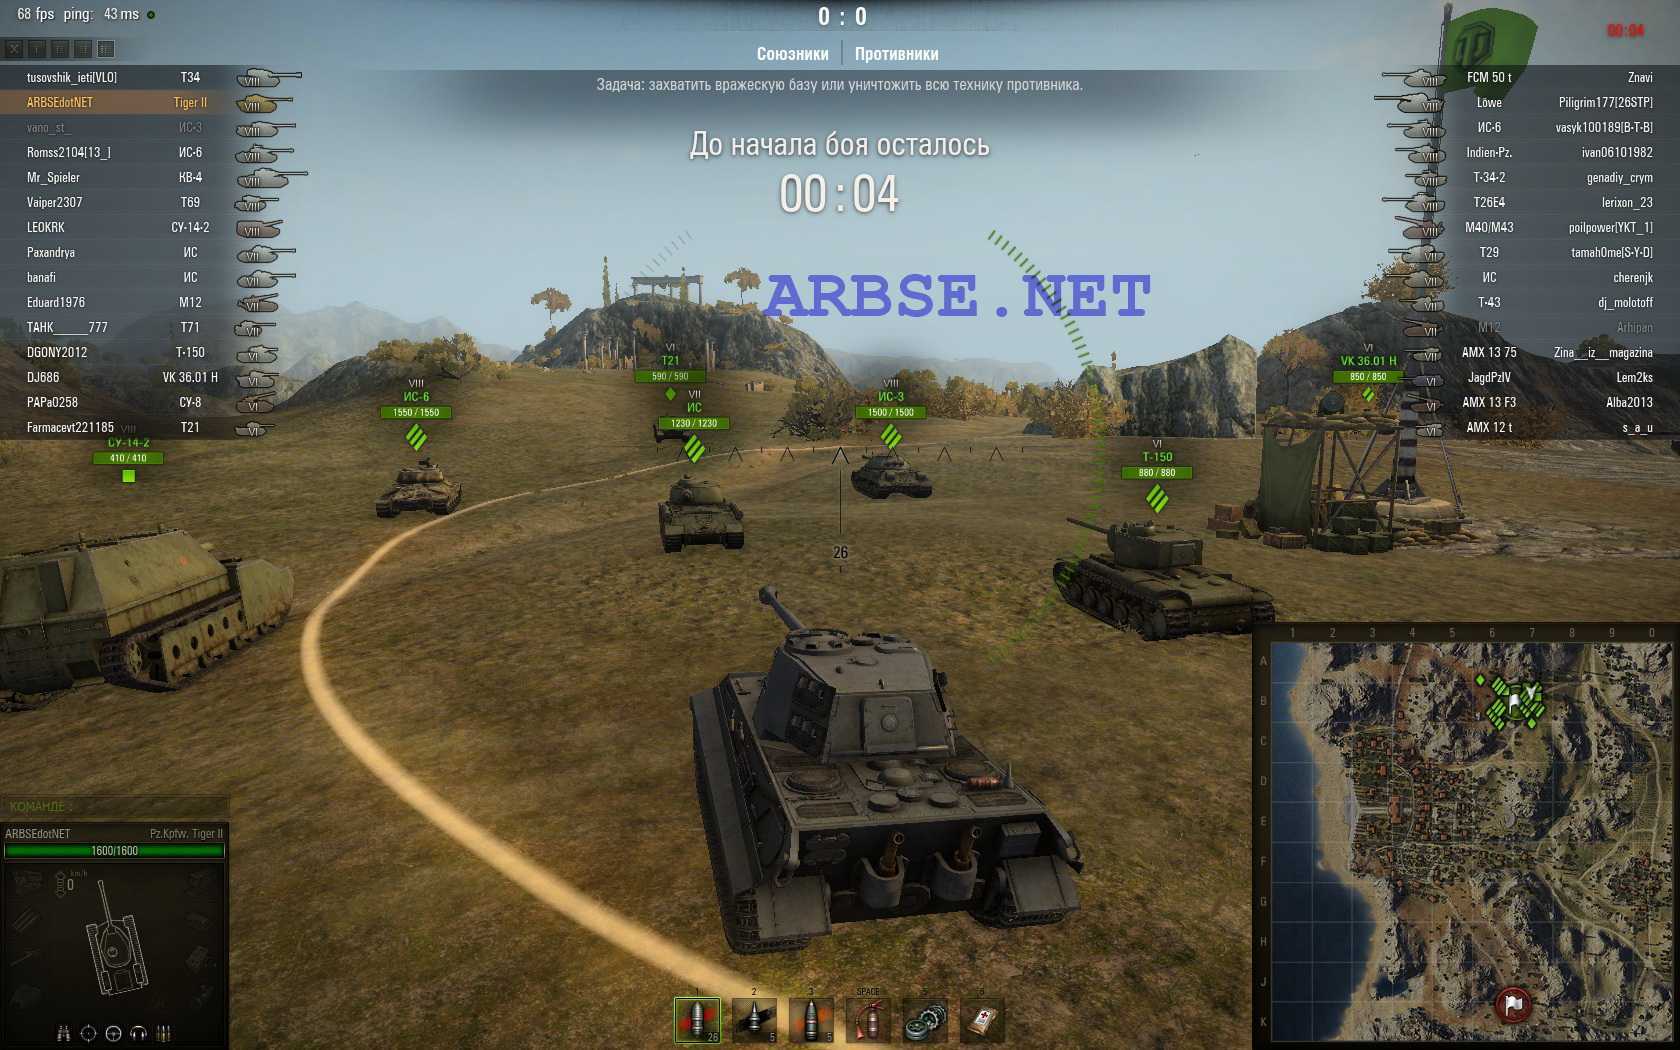 Въехали на танке: белорусы из wargaming покорили мир своей world of tanks — секрет фирмы